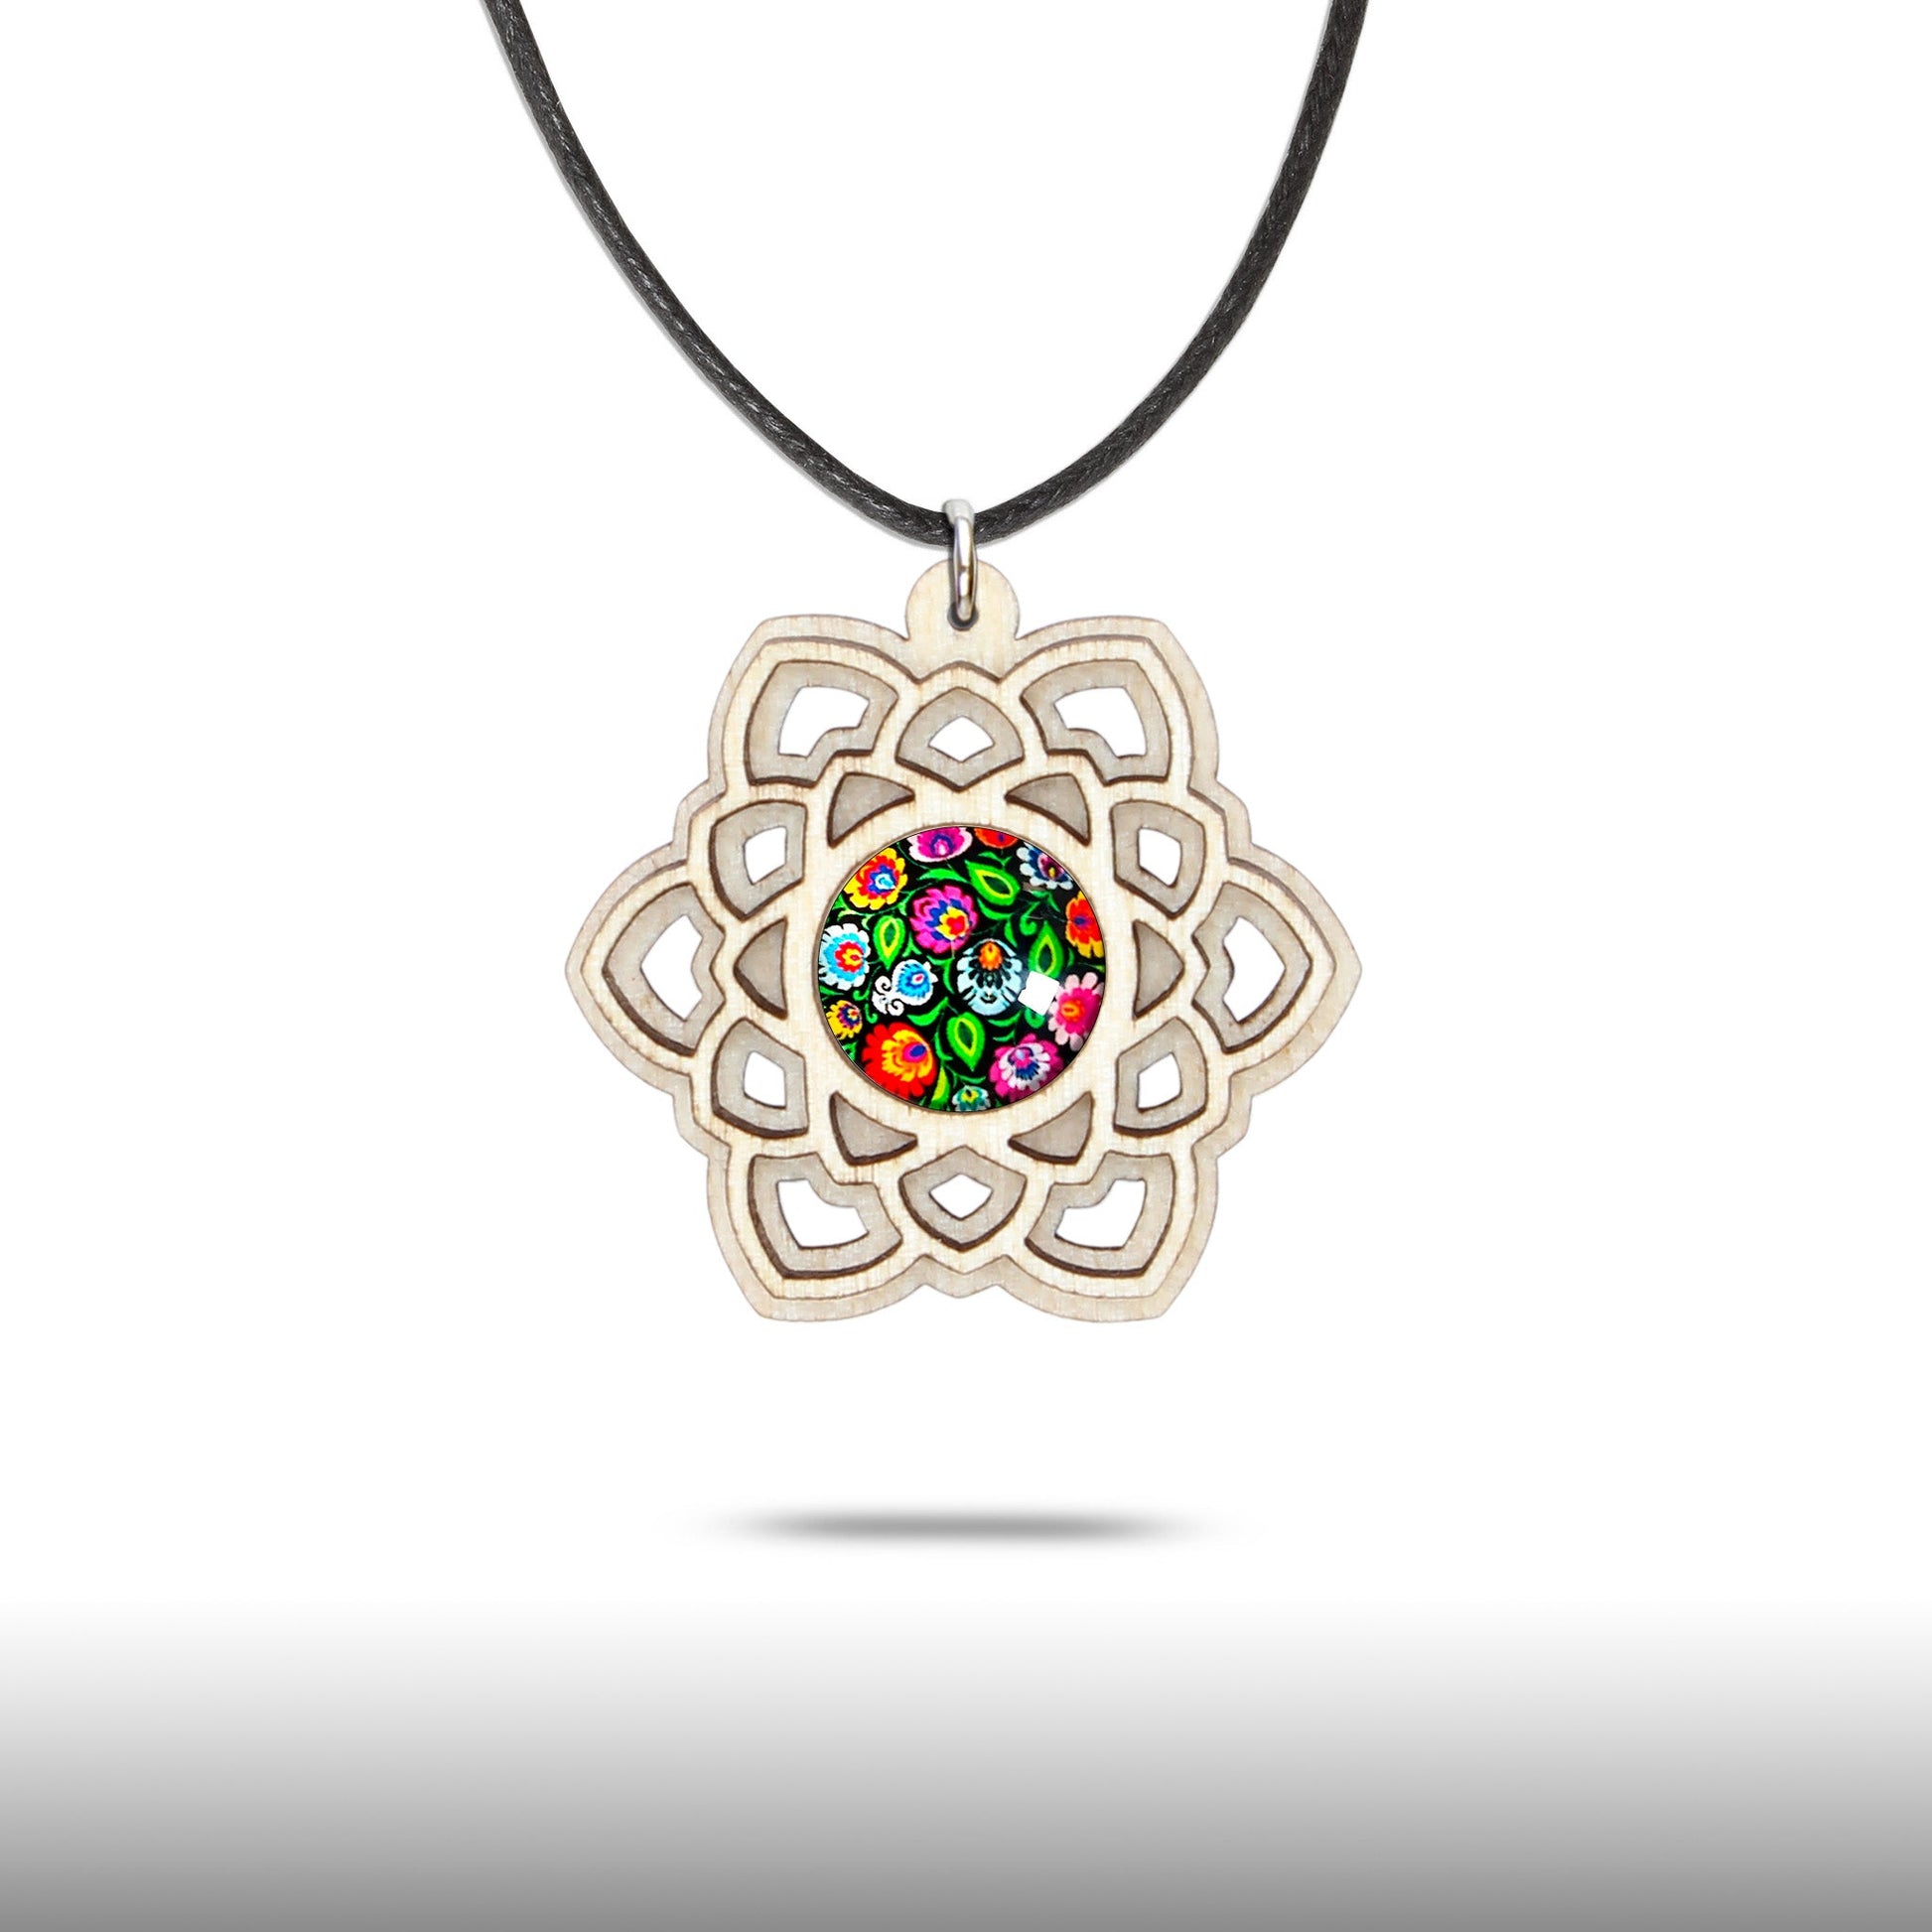 Halskette Mandala "Stern" aus Holz mit Glasstein - Nanino Design Onlineshop -